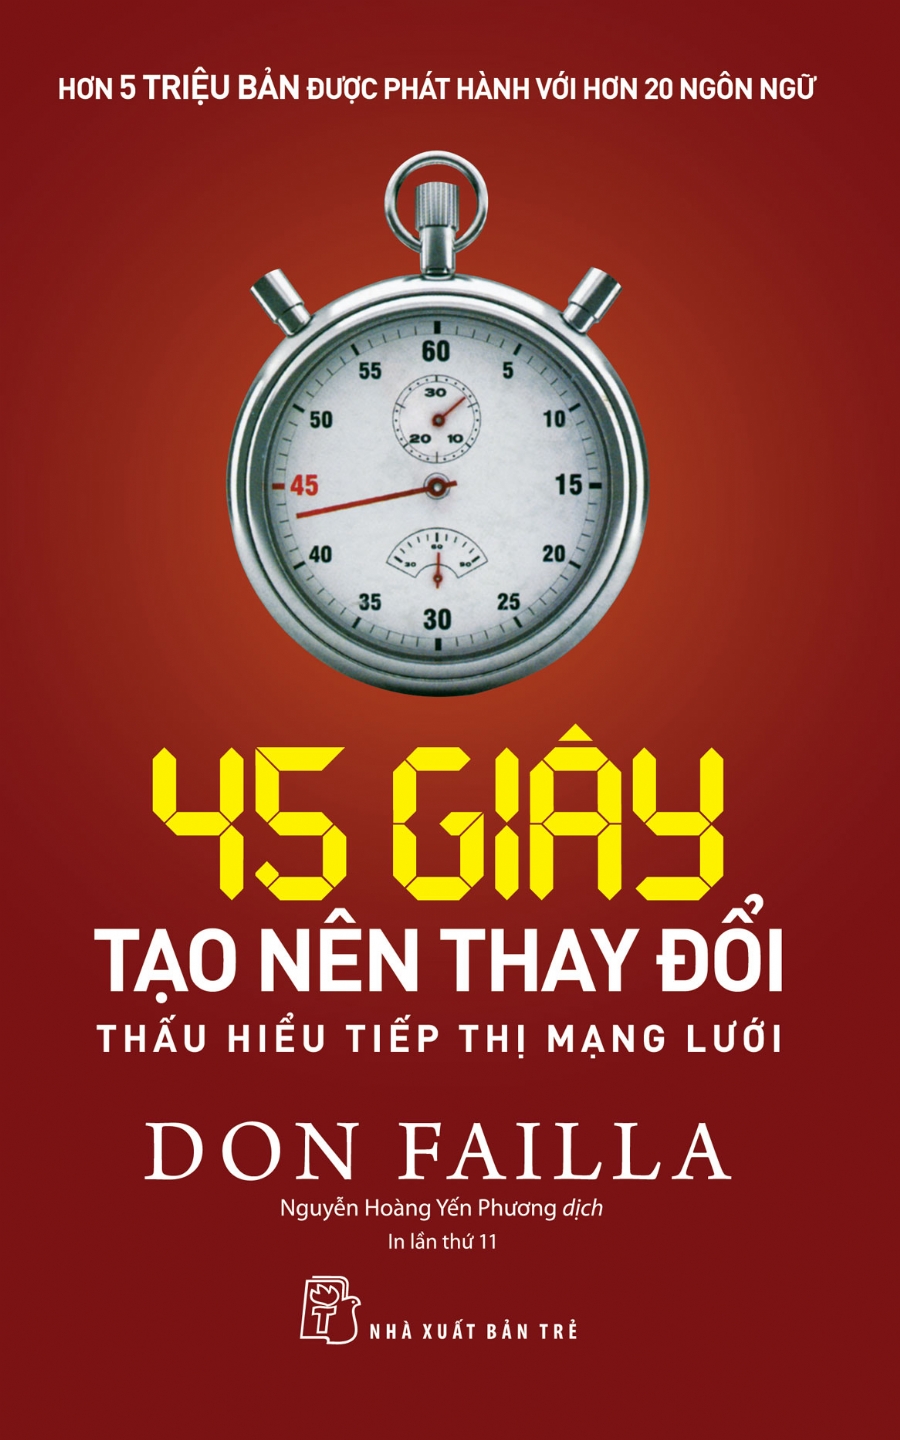 [Sách] 45 giây làm chủ cuộc đời – Don Failla